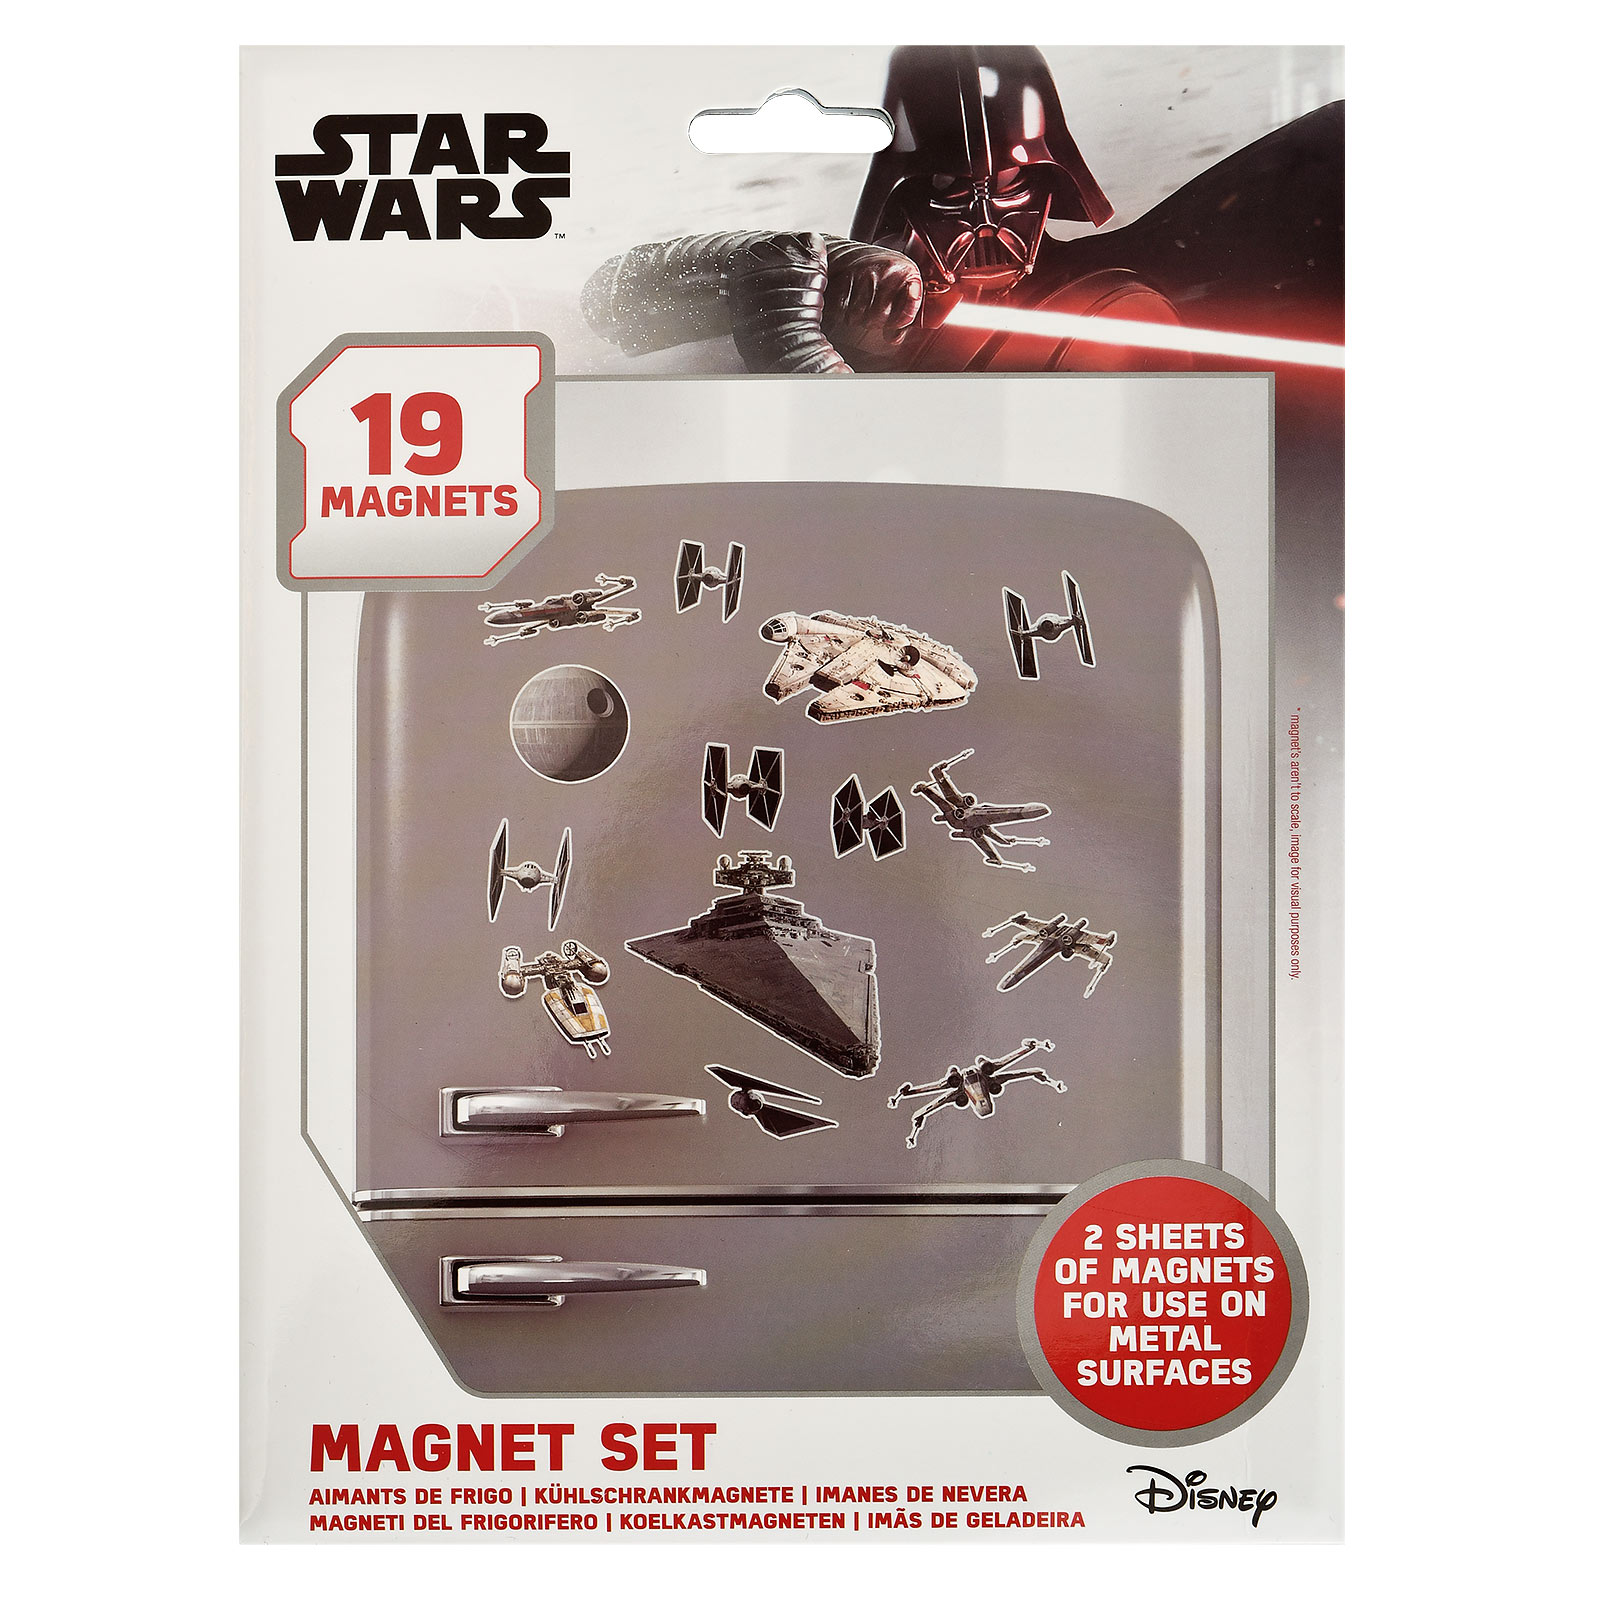 Star Wars - Space Battle Magnet Set